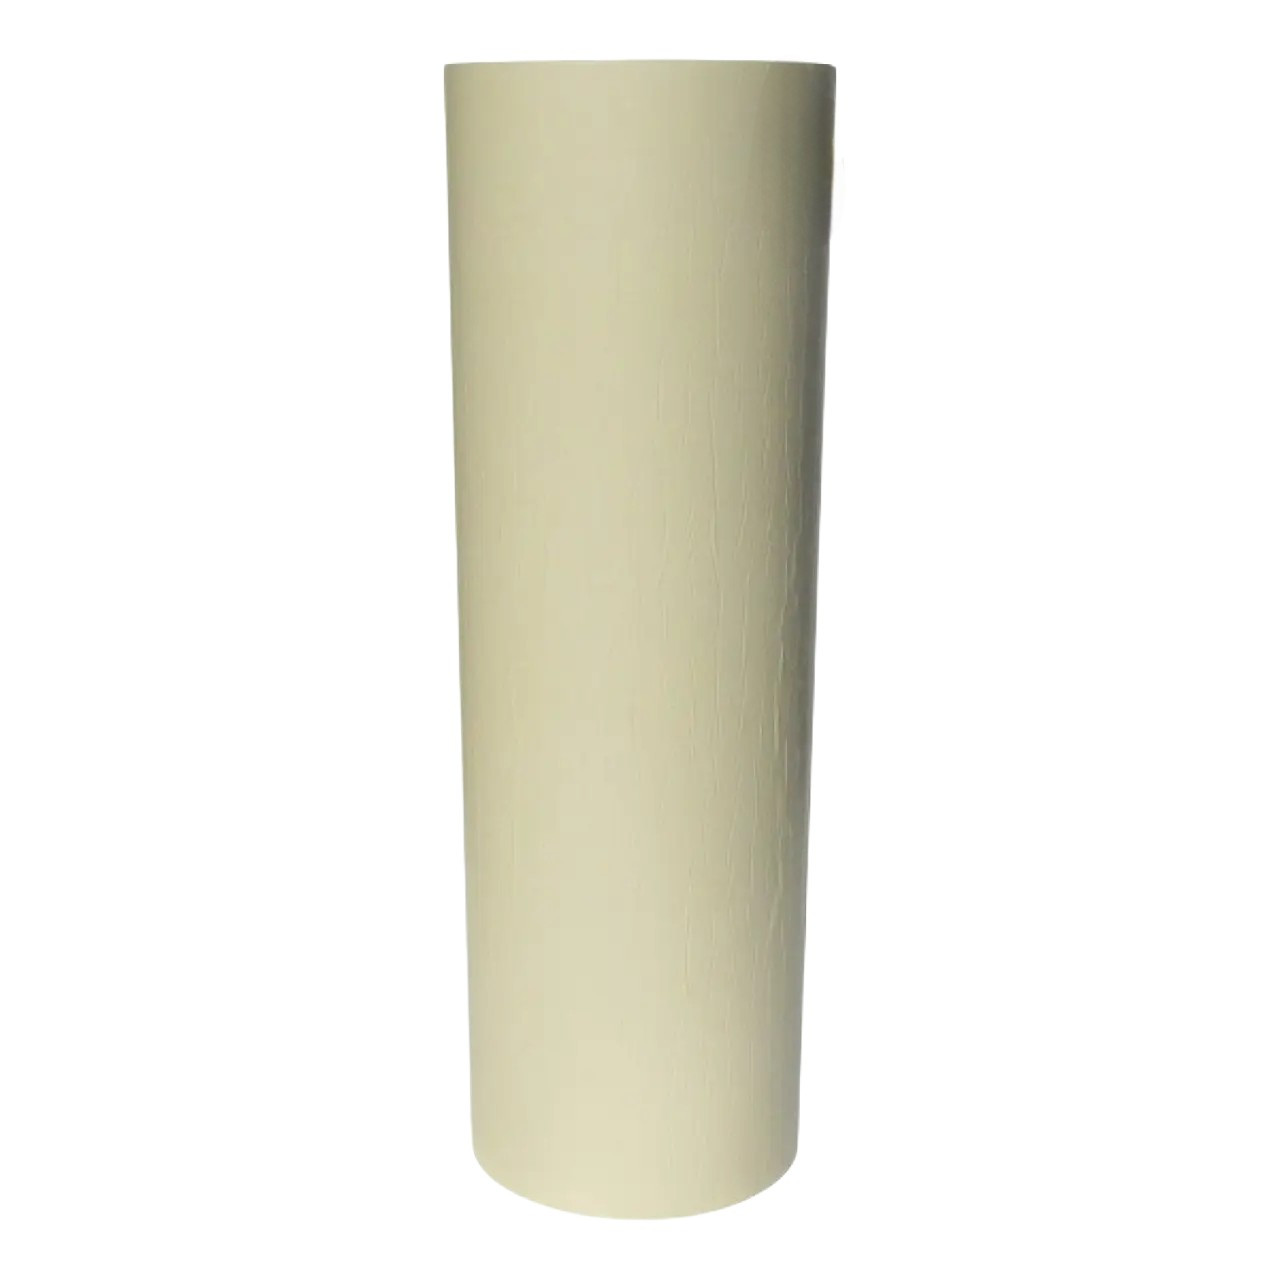 Ізолонтейп спінений поліетилен з клейовим шаром 10 мм, ширина 1м, білий (3010)